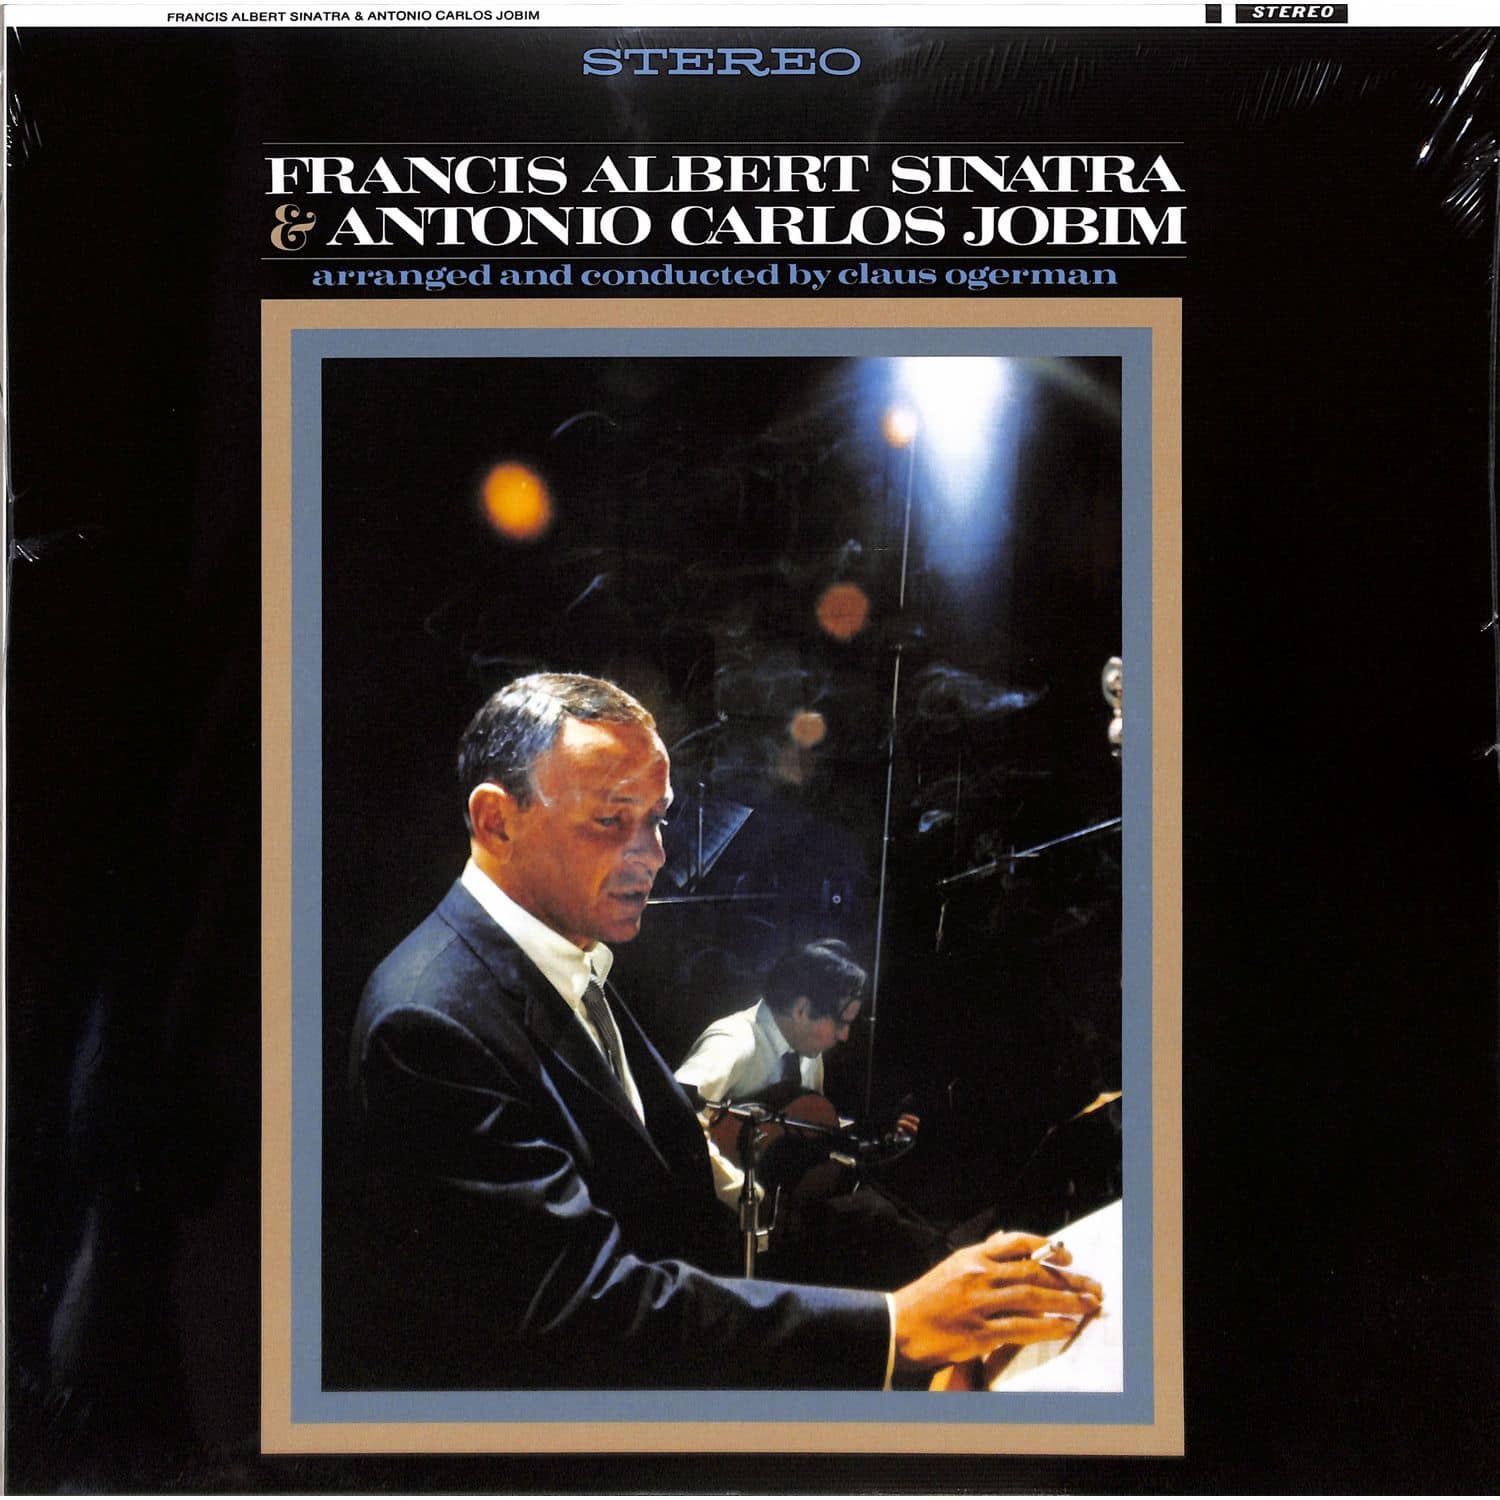 Frank Sinatra & Antonio Carlos Jobim - FRANCIS ALBERT SINATRA & ANTONIO CARLOS JOBIM 